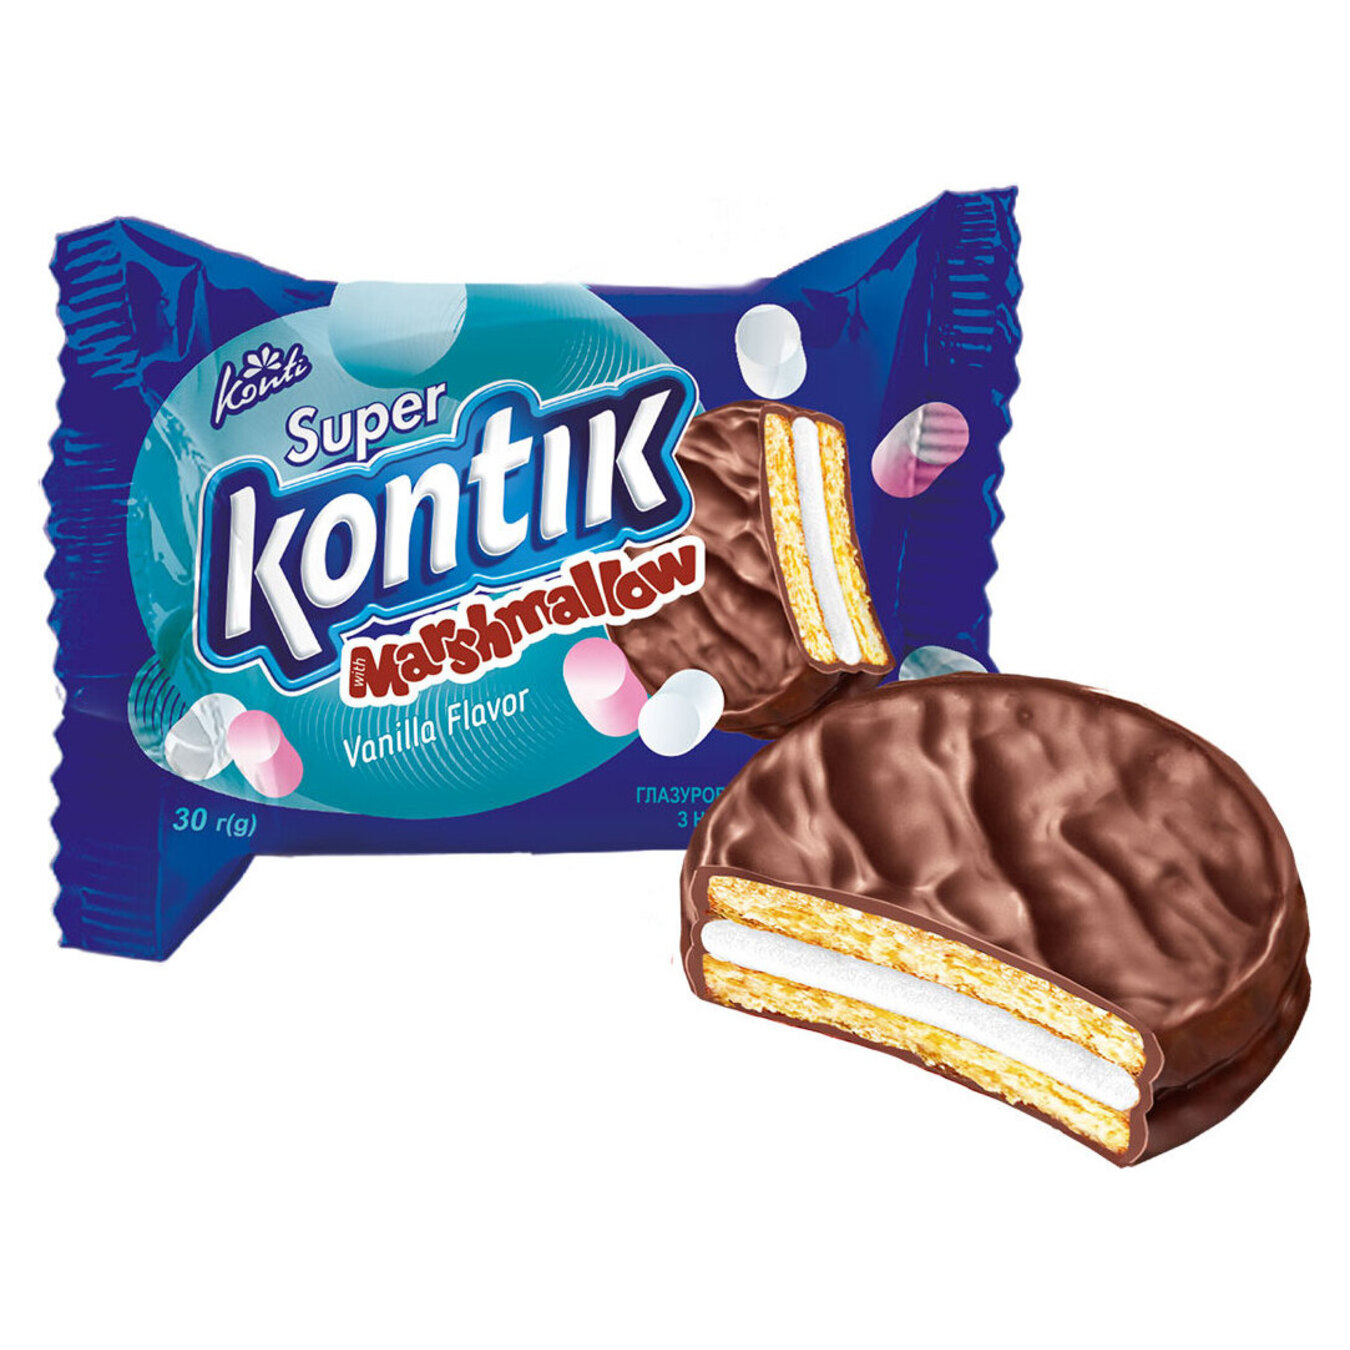 Печенье Konti Super Kontik с начинкой маршмеллоу 30г